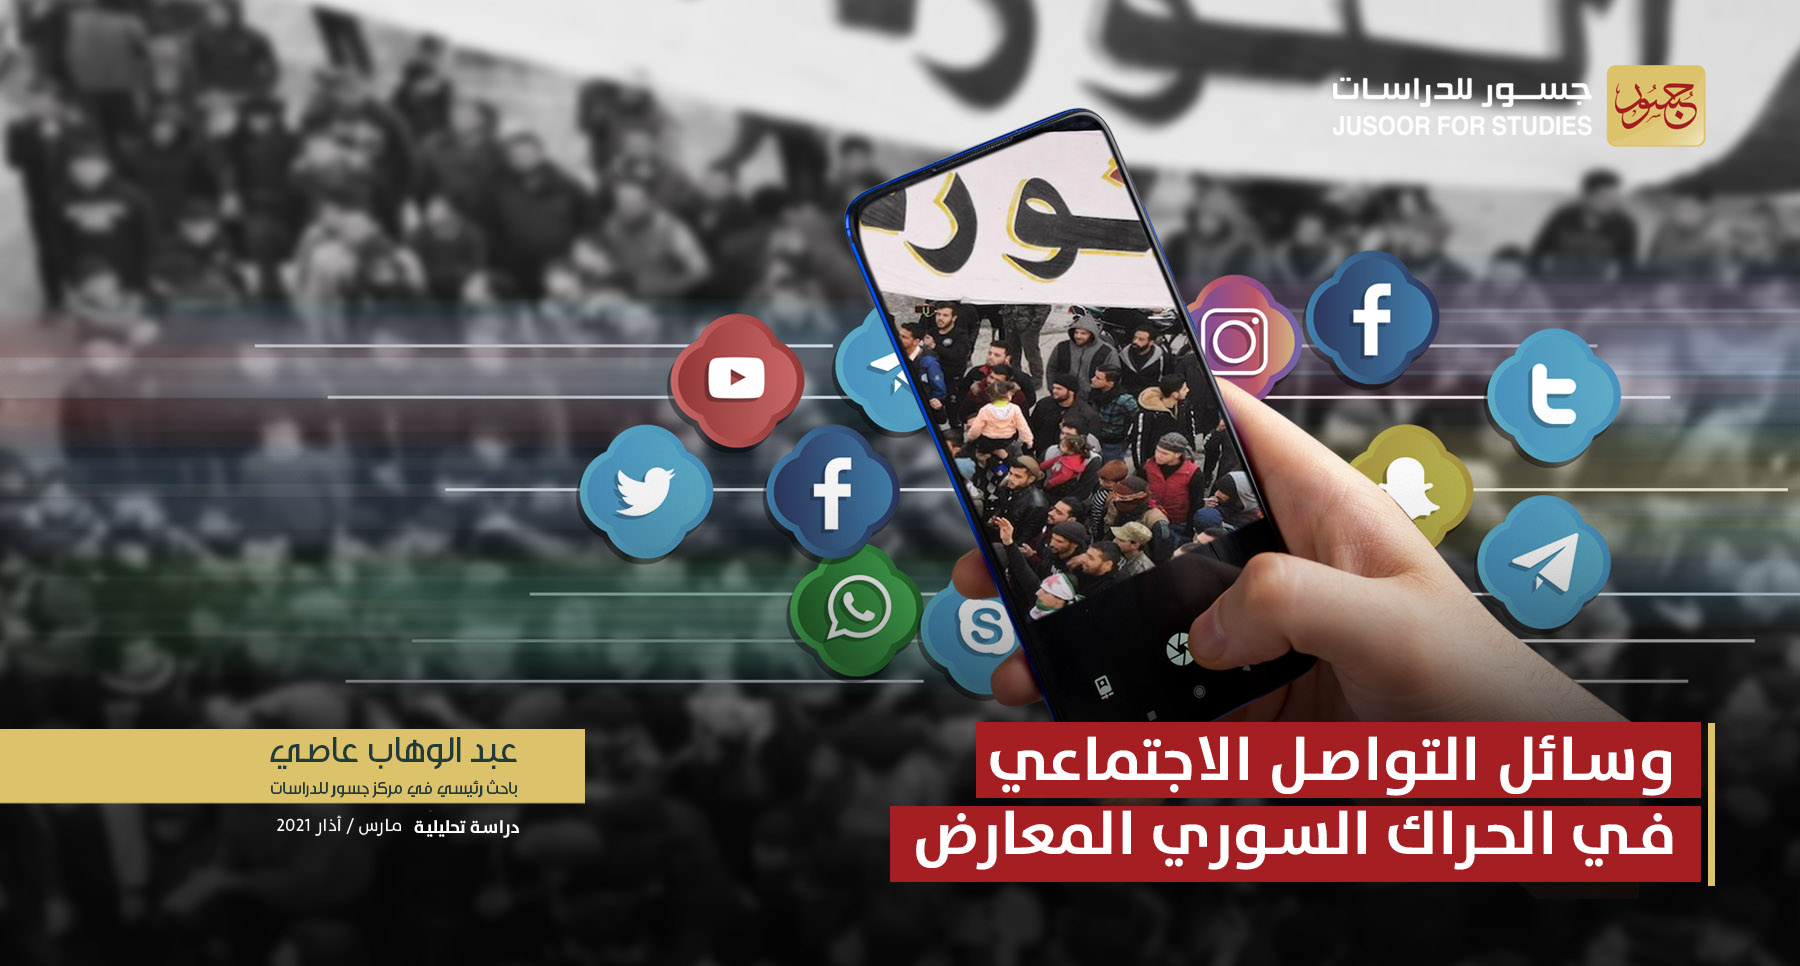 وسائل التواصل الاجتماعي في الحراك السوري المعارض 2011-2021